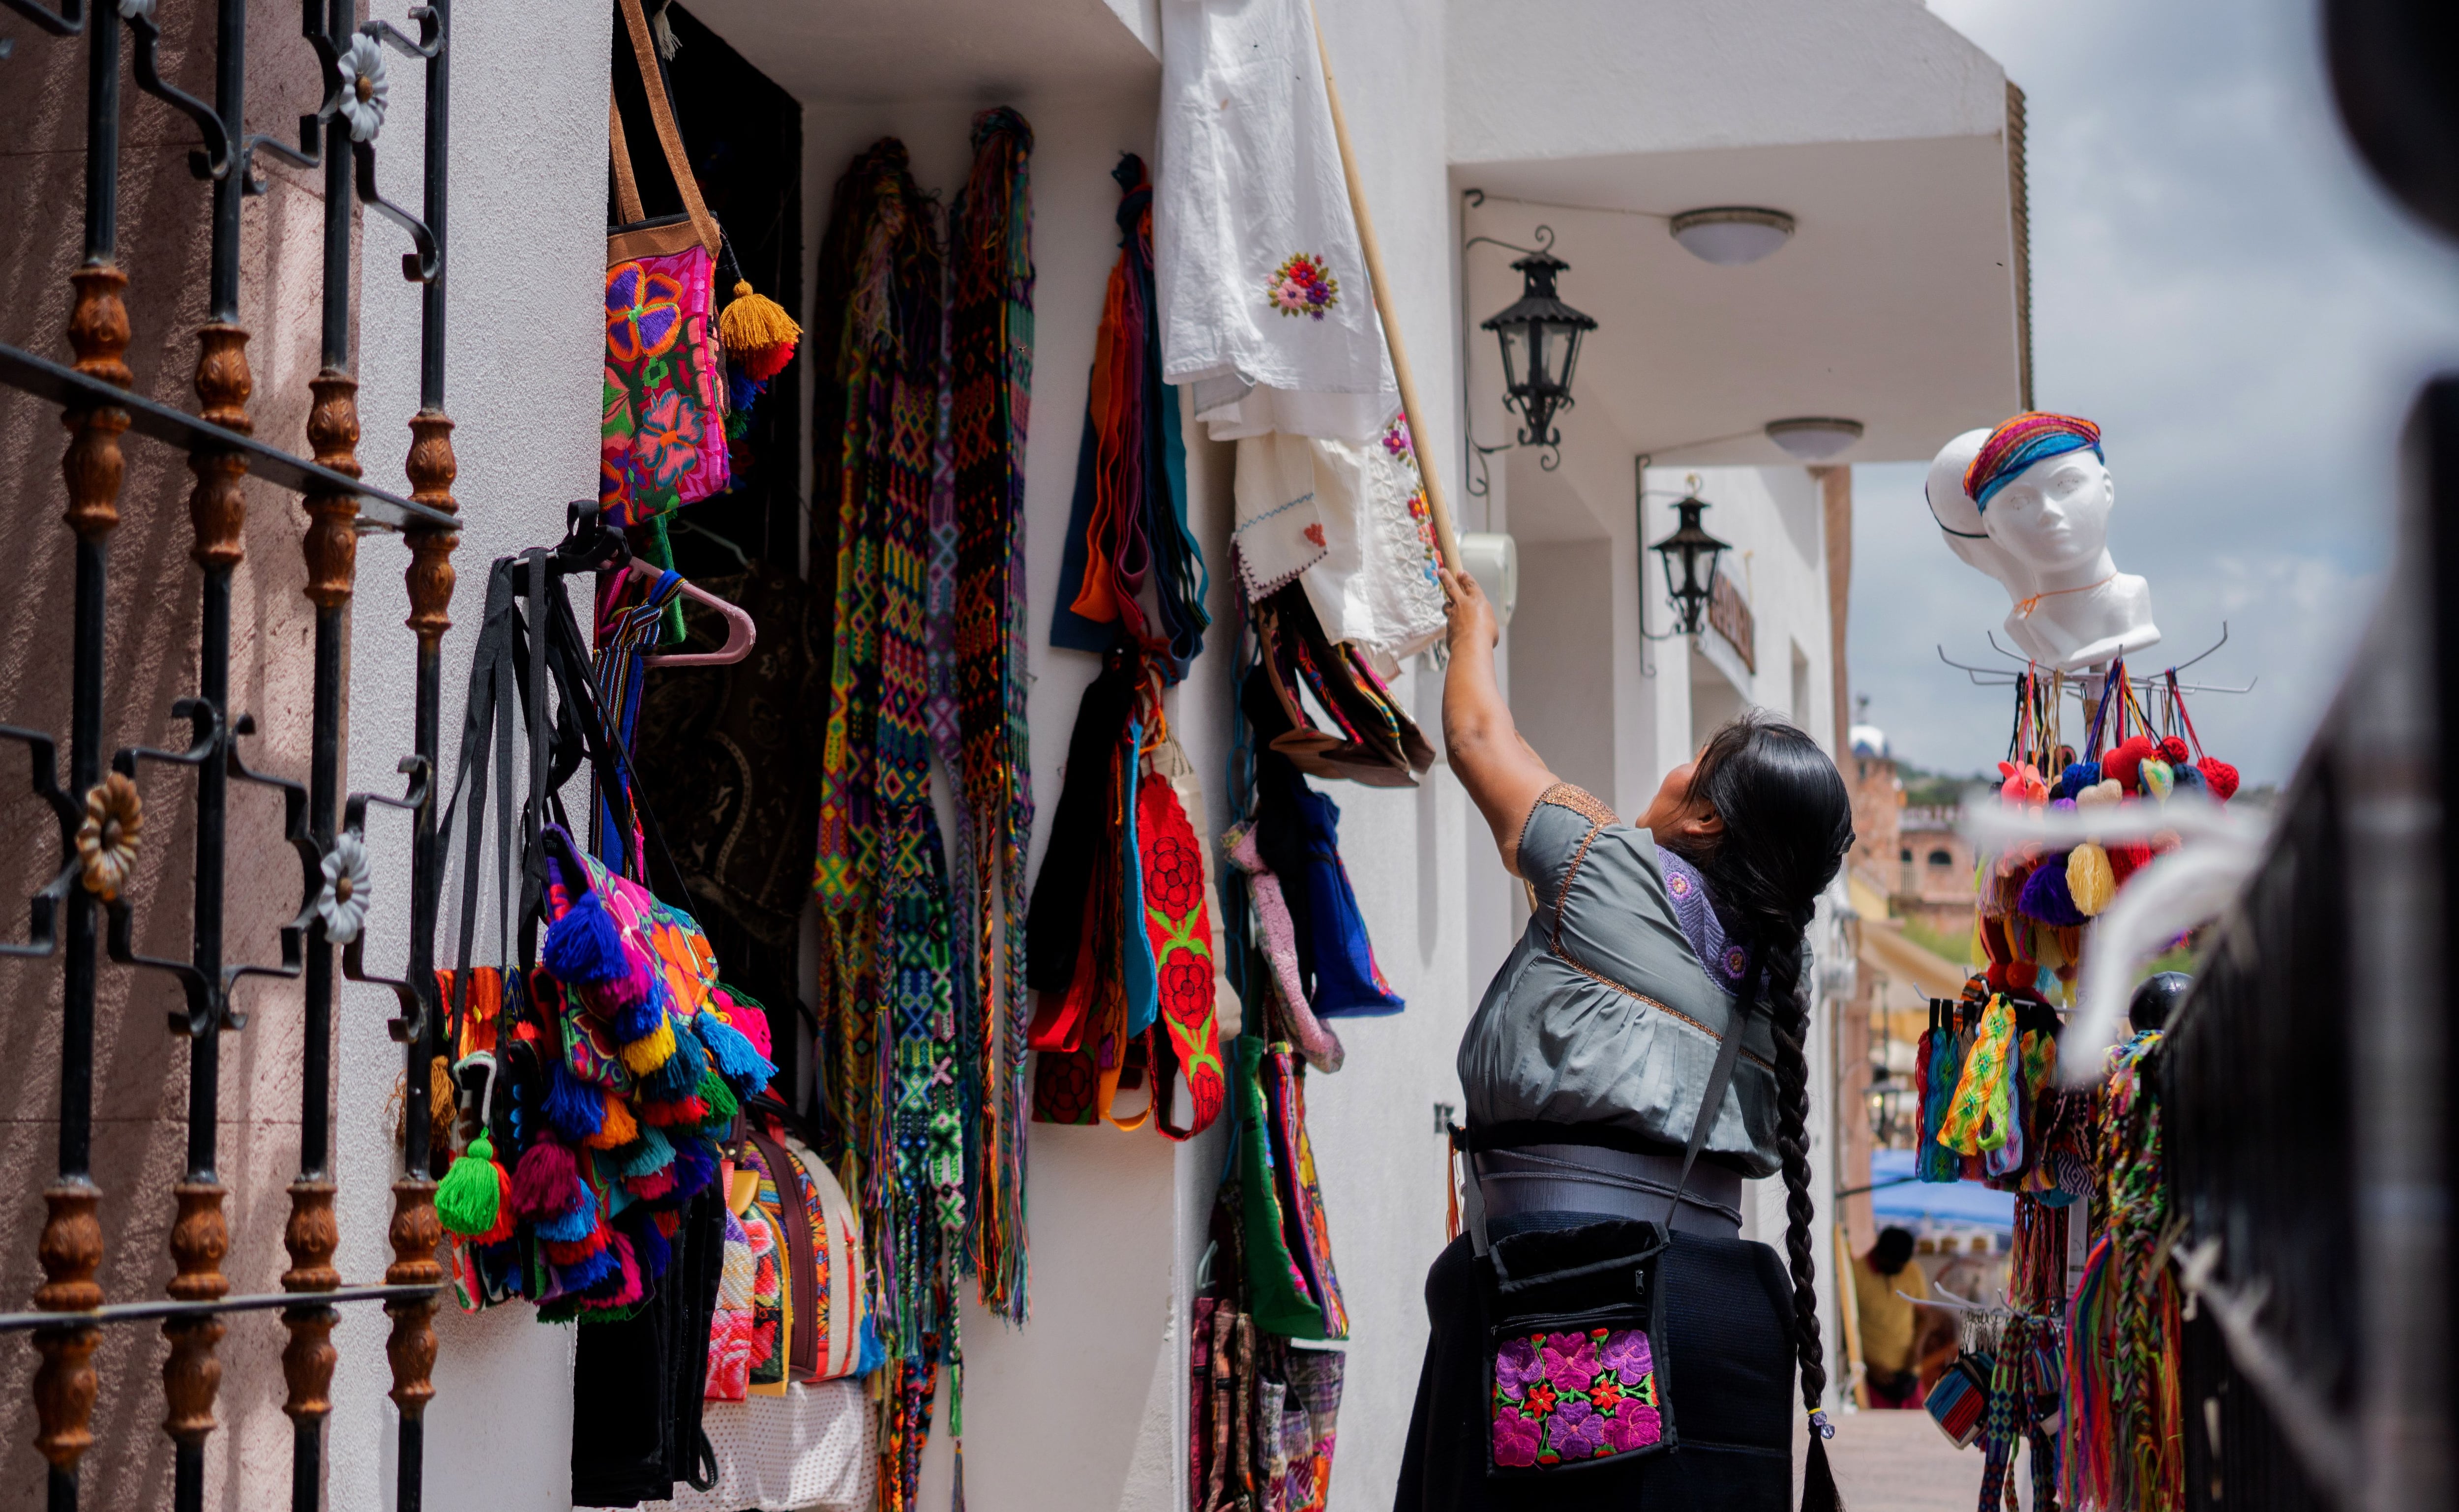 Colaborar con los artesanos locales ayuda a la economía del lugar. (Foto: Shutterstock)